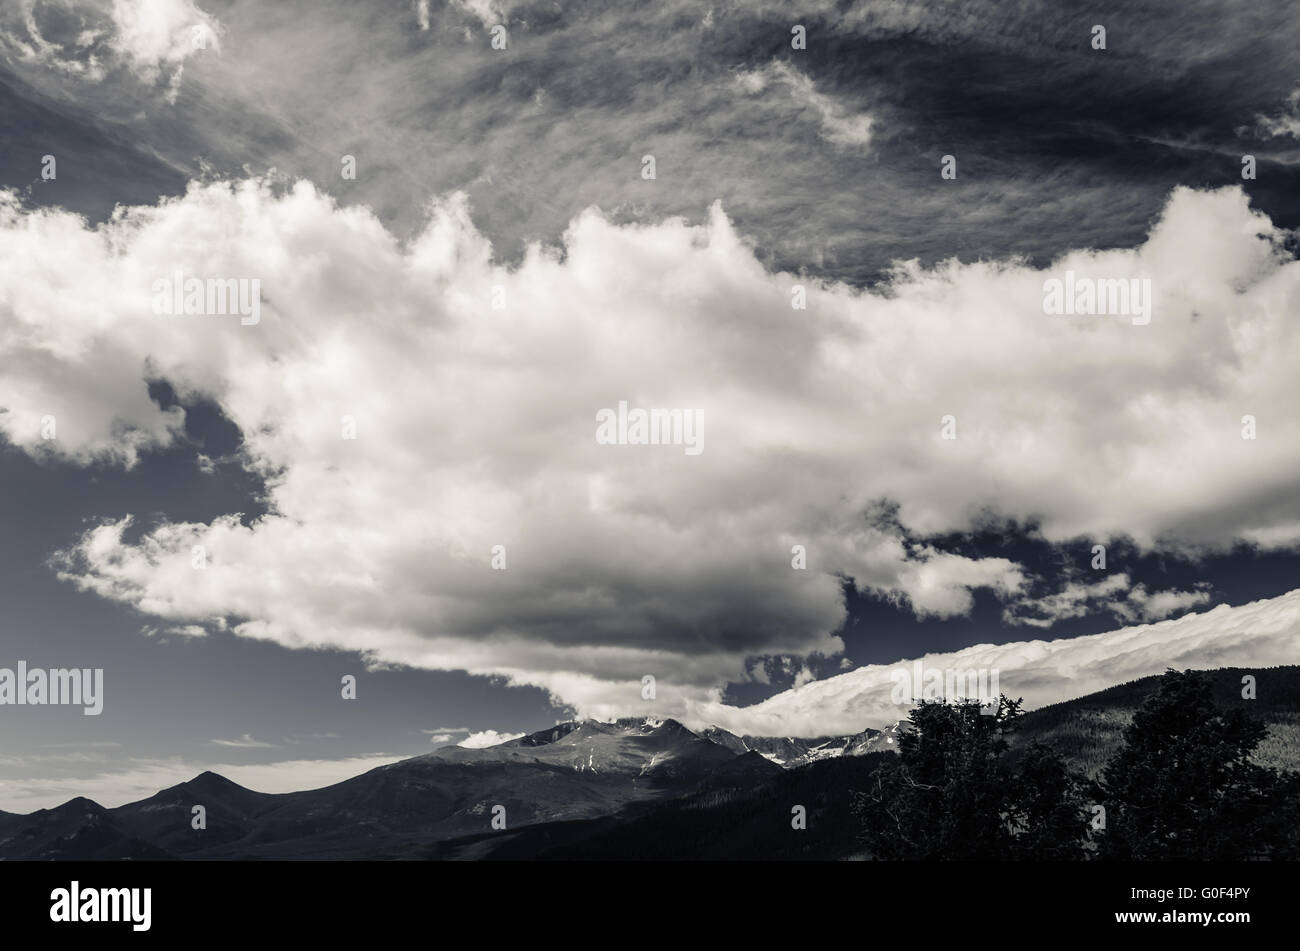 Vista panoramica di nuvole che sovrastano le montagne rocciose, Colorado, Stati Uniti d'America in bianco e nero Foto Stock